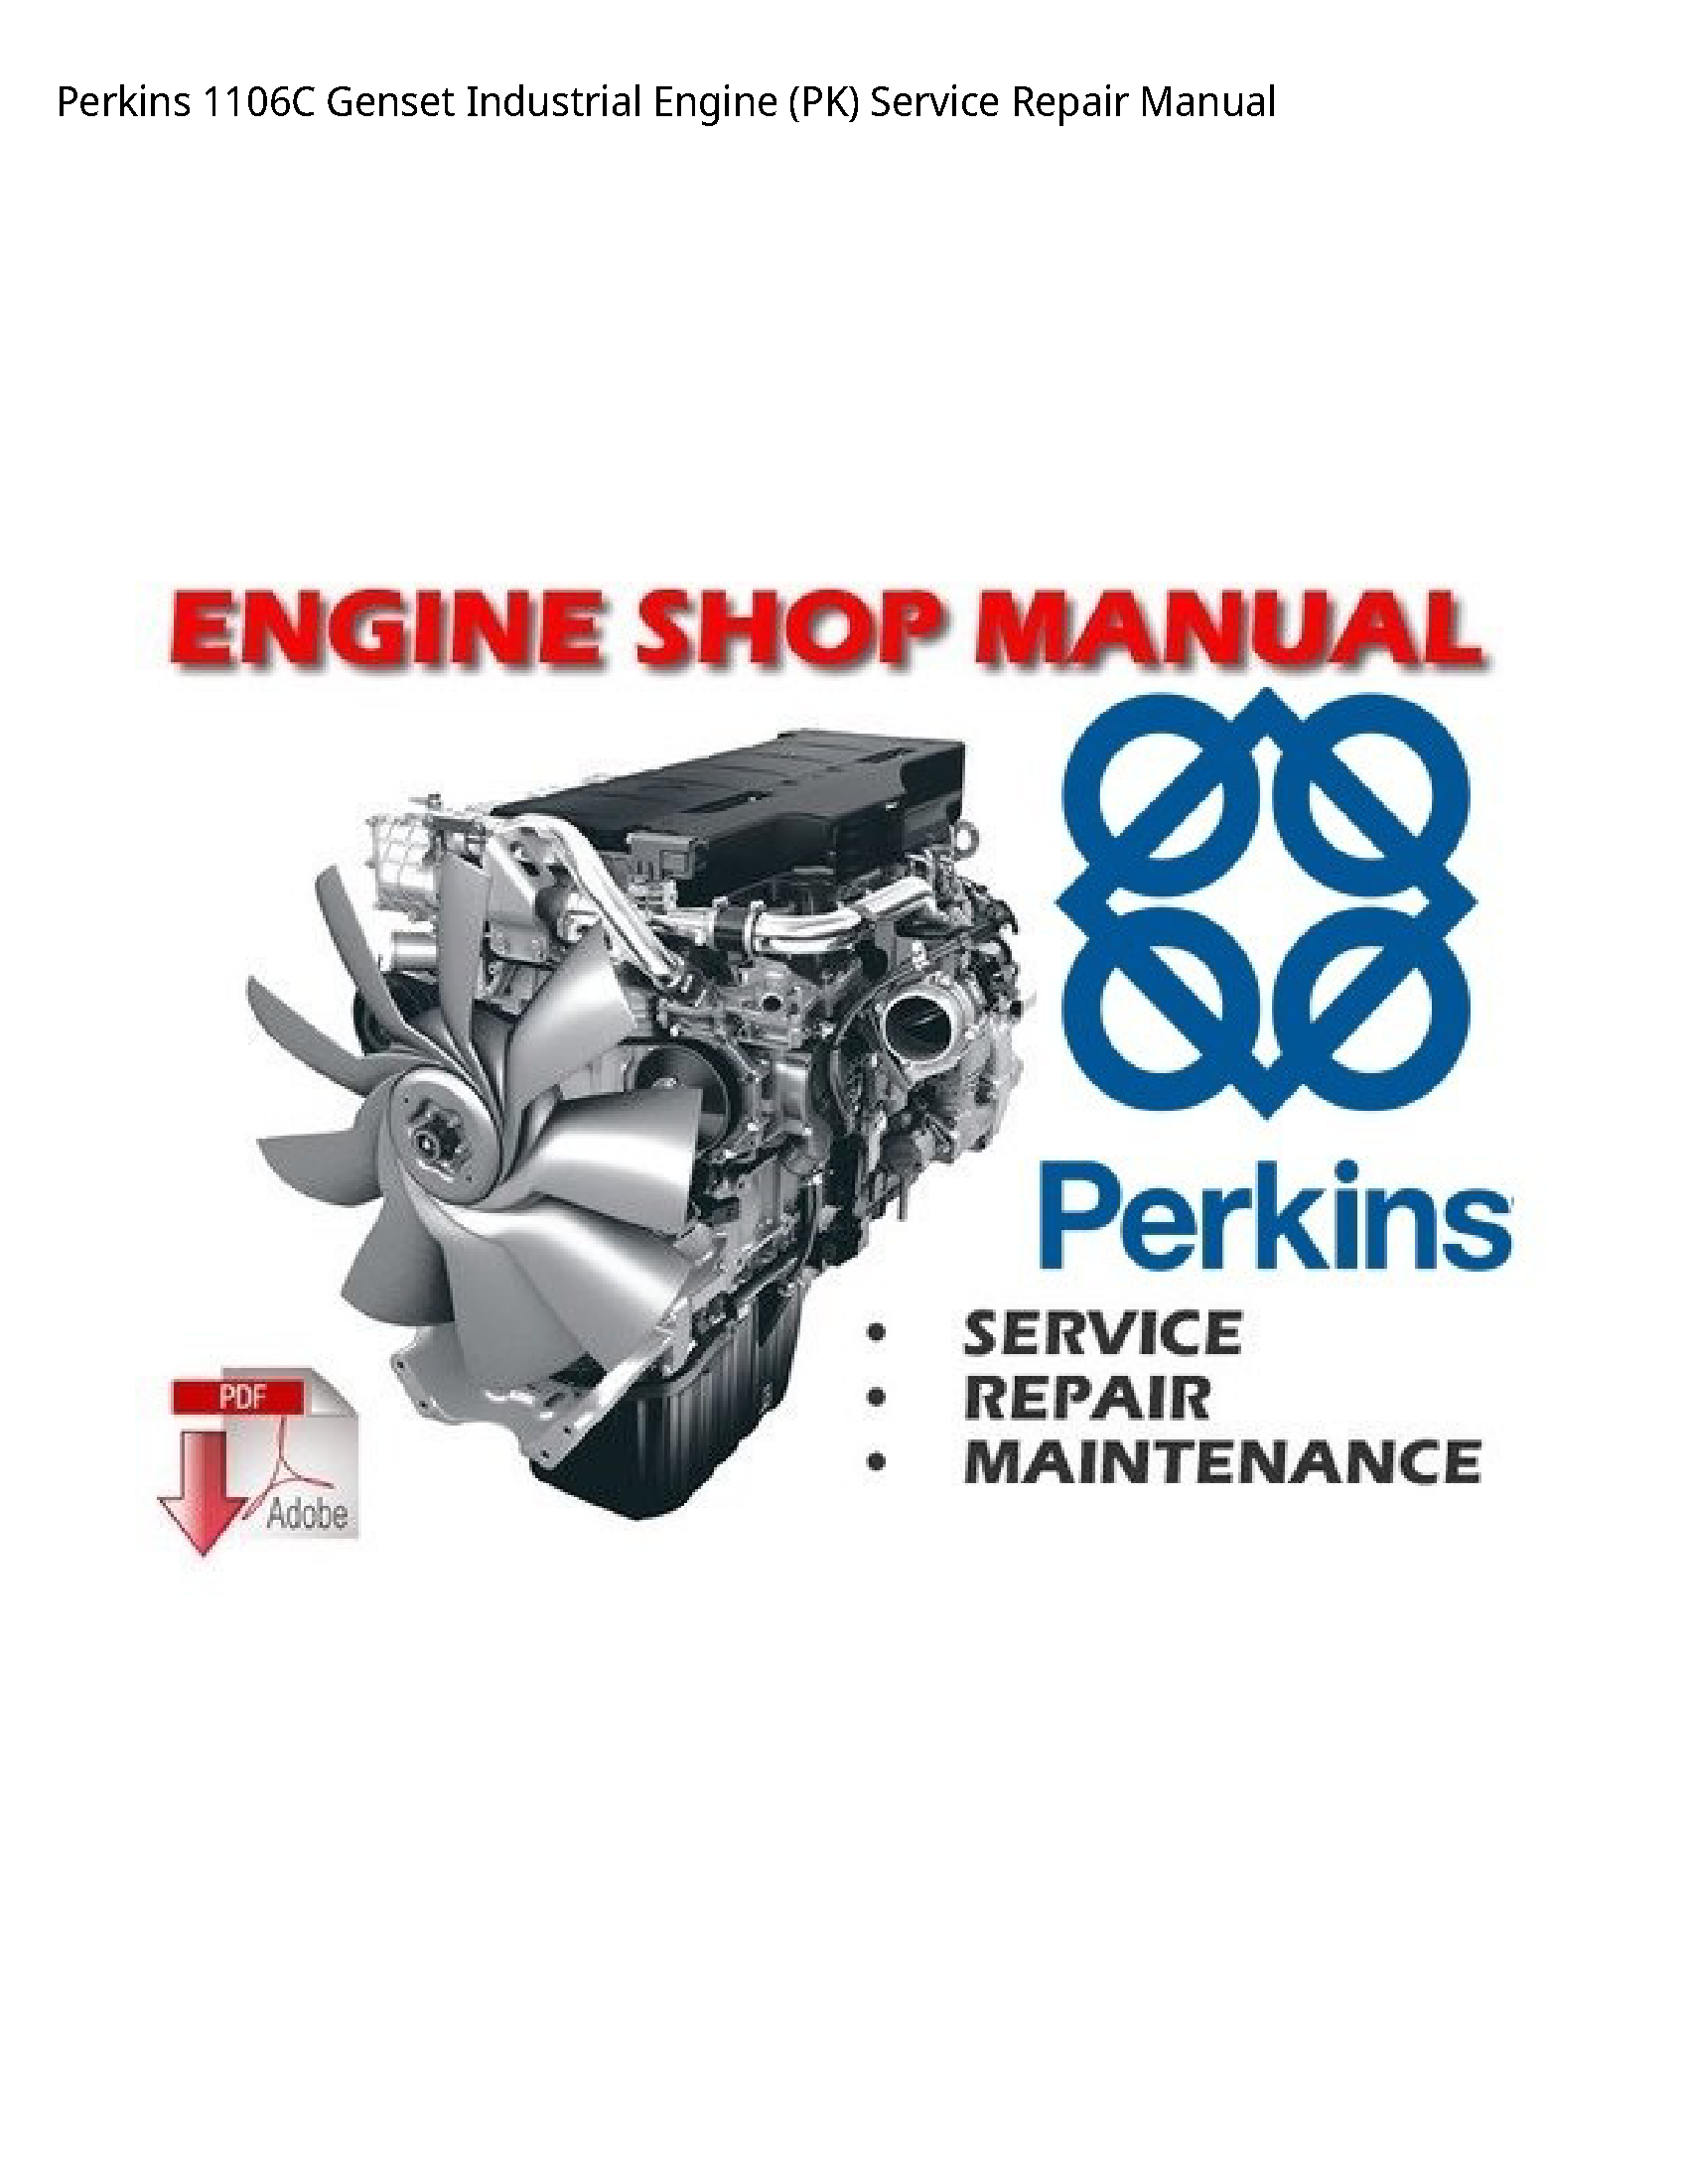 Perkins 1106C Genset Industrial Engine (PK) manual